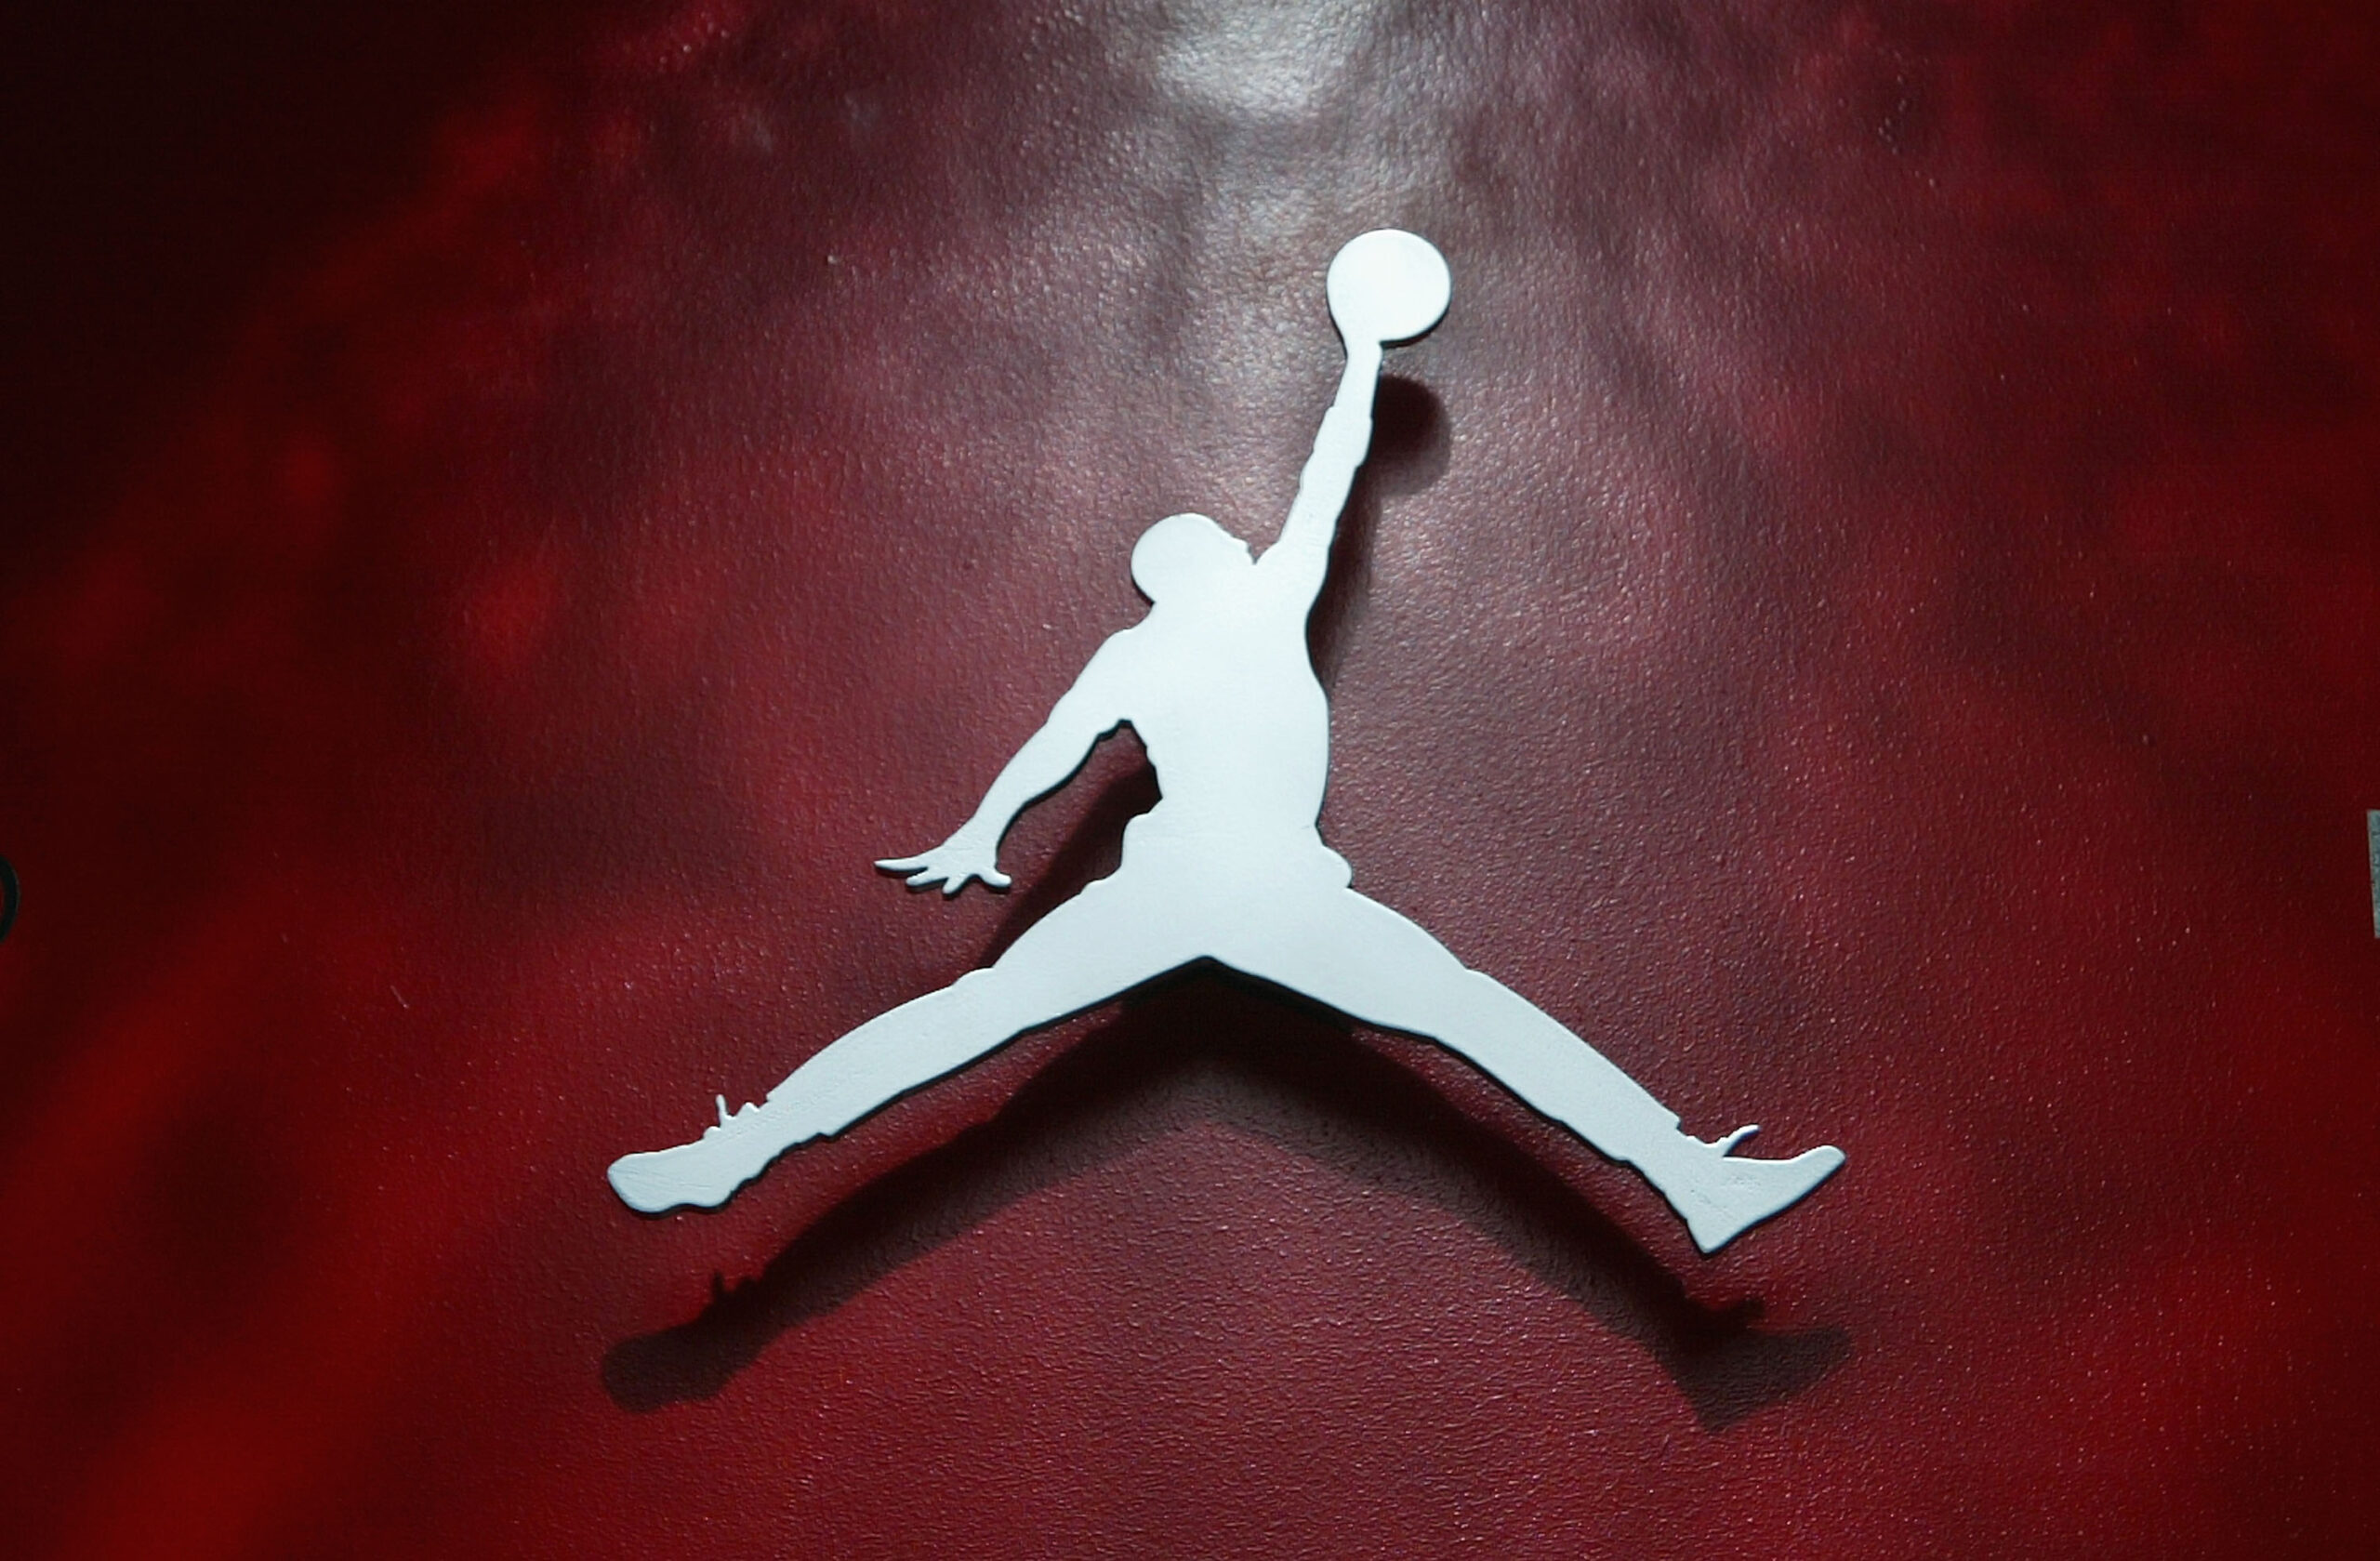 Air Jordan 11 “DMP” Gets A Fresh Look